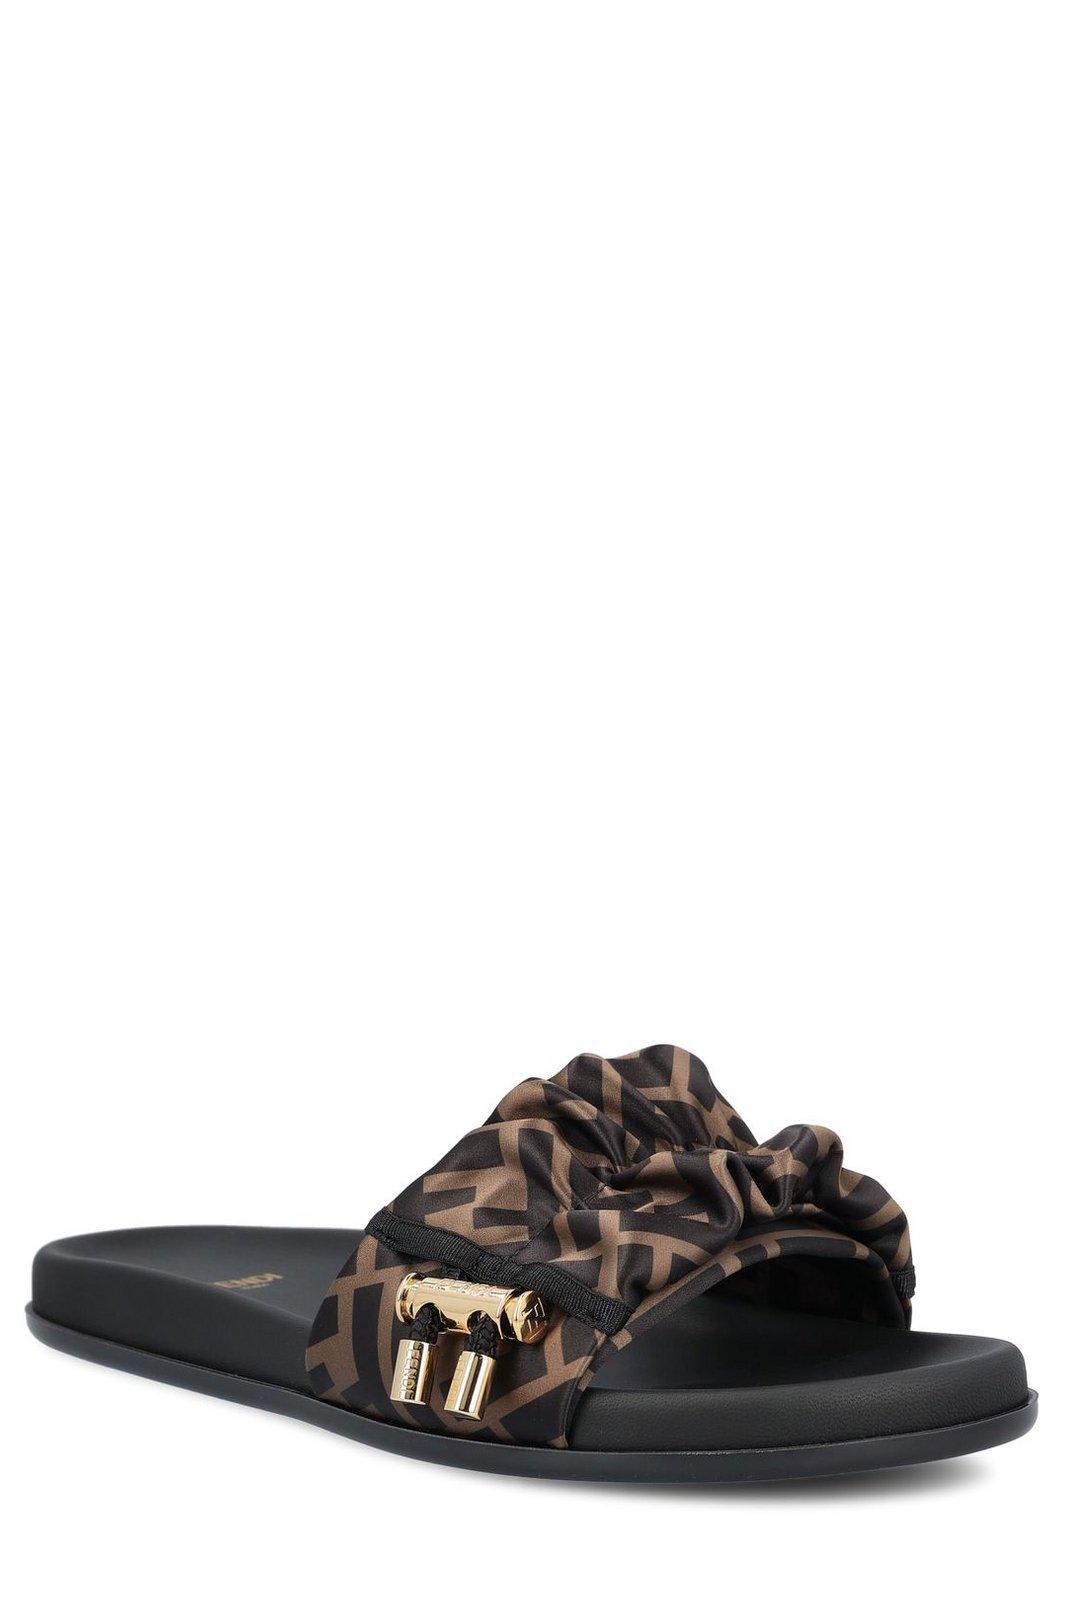 Shop Fendi Toggle Fastening Ff Slide Sandals In Brown